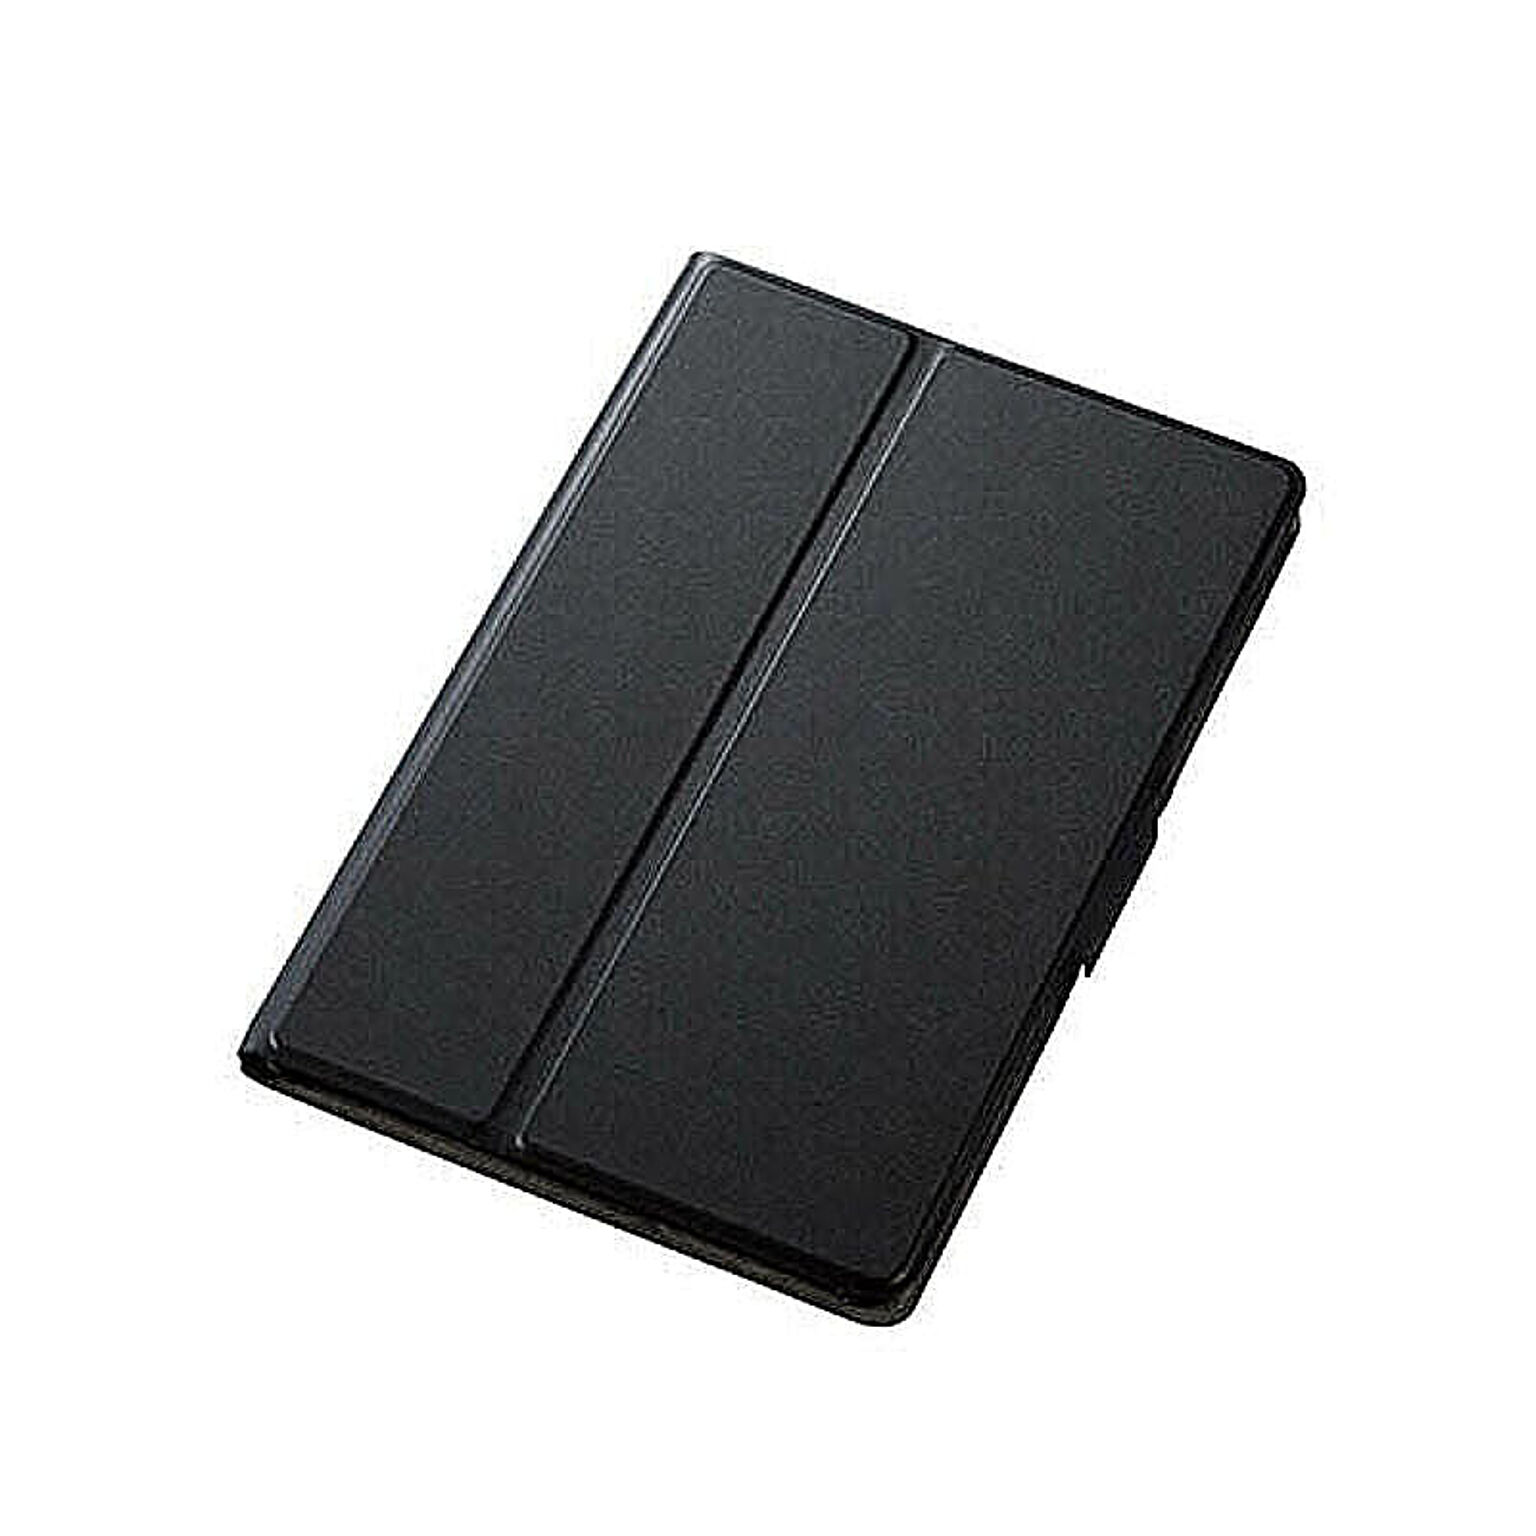 エレコム iPad mini 2019/フリーアングル/スリープ対応/ブラック TB-A19SWVFUBK 管理No. 4549550123914